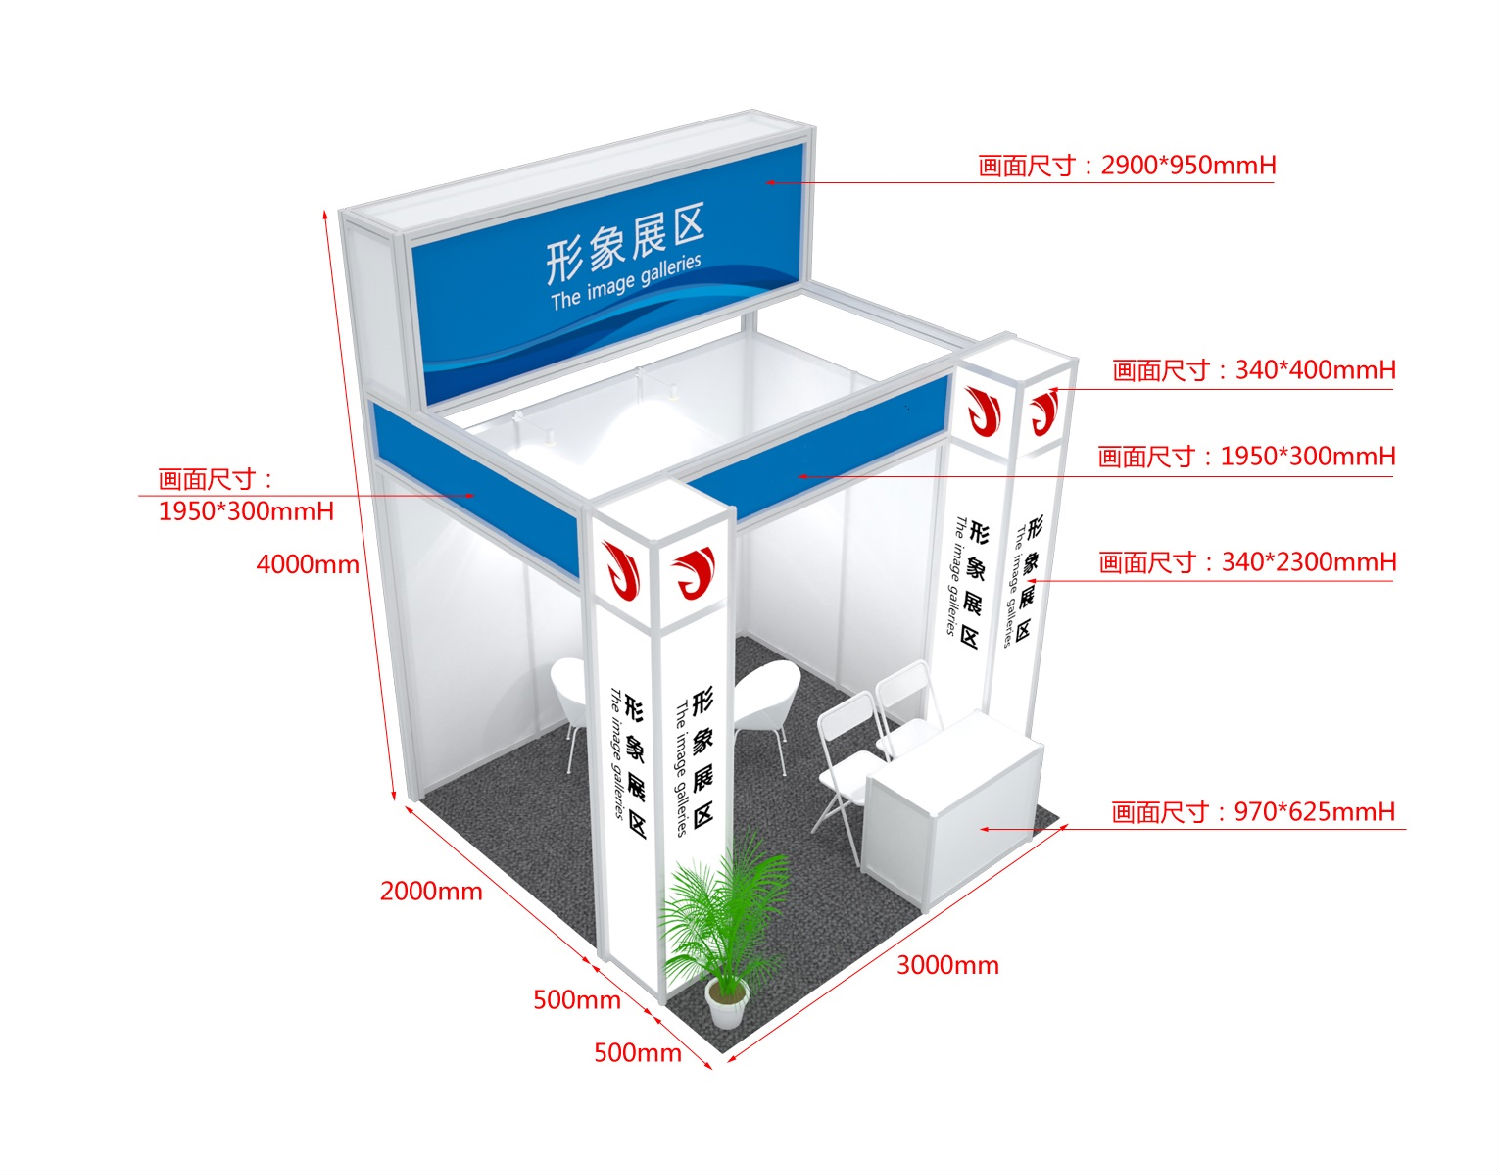 深圳国际消毒感控设备展览会：展位示意图